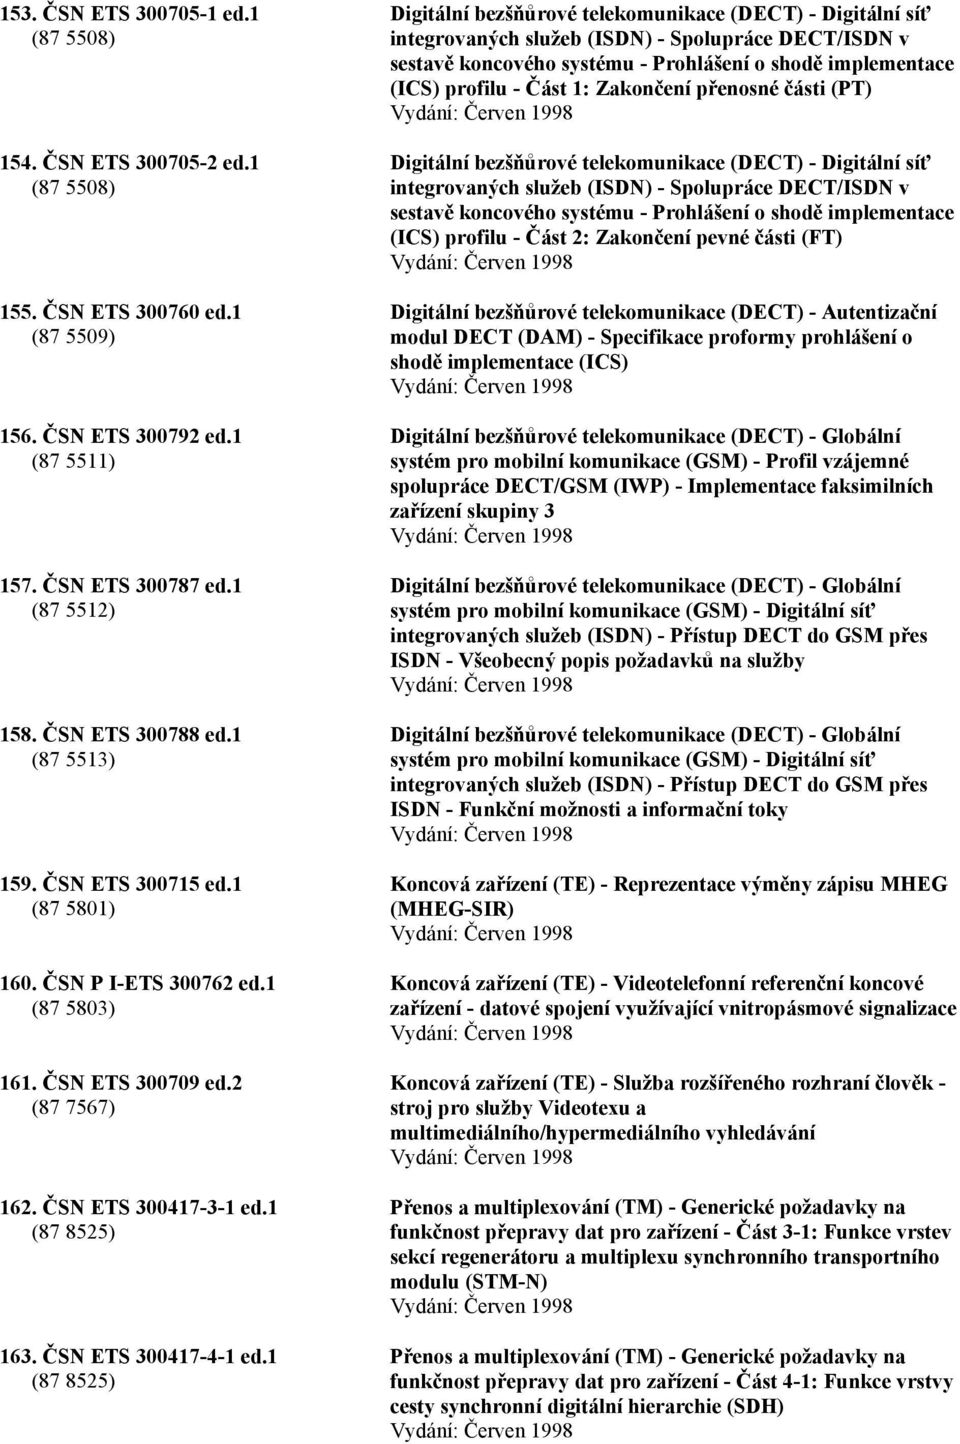 ČSN ETS 300417-4-1 ed.